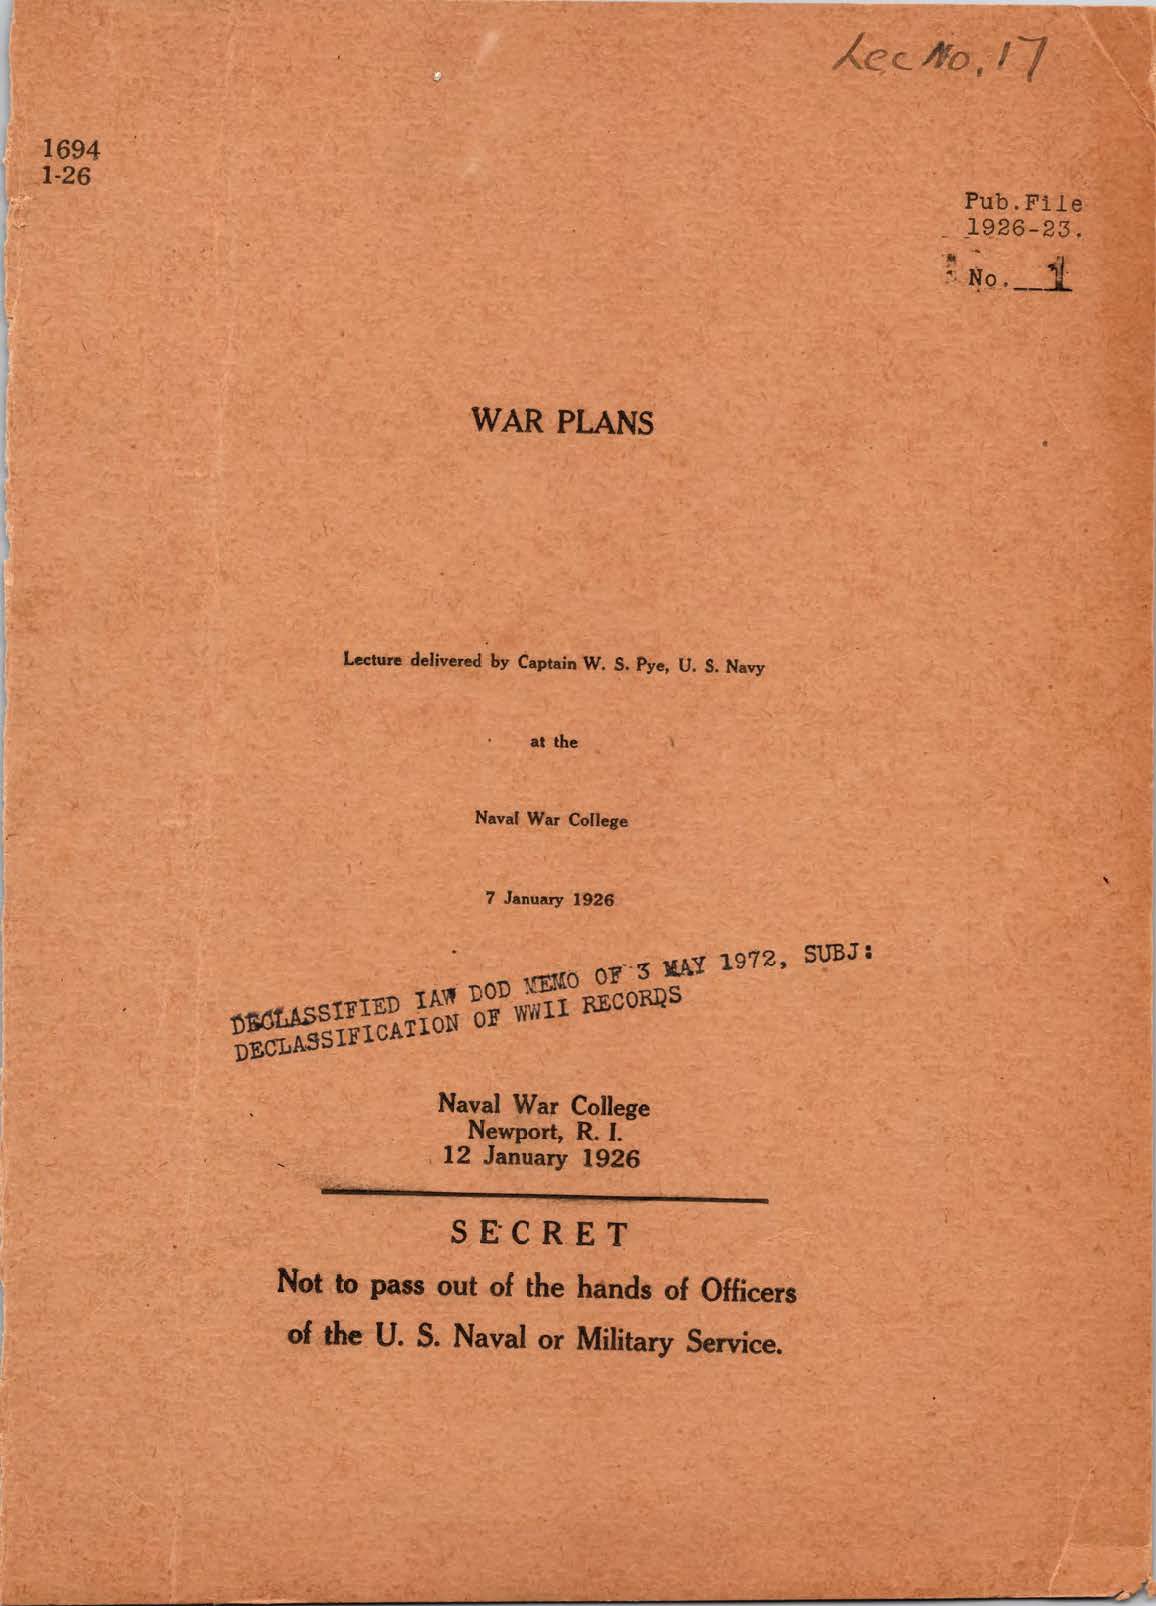 War Plans, by W. S. Pye